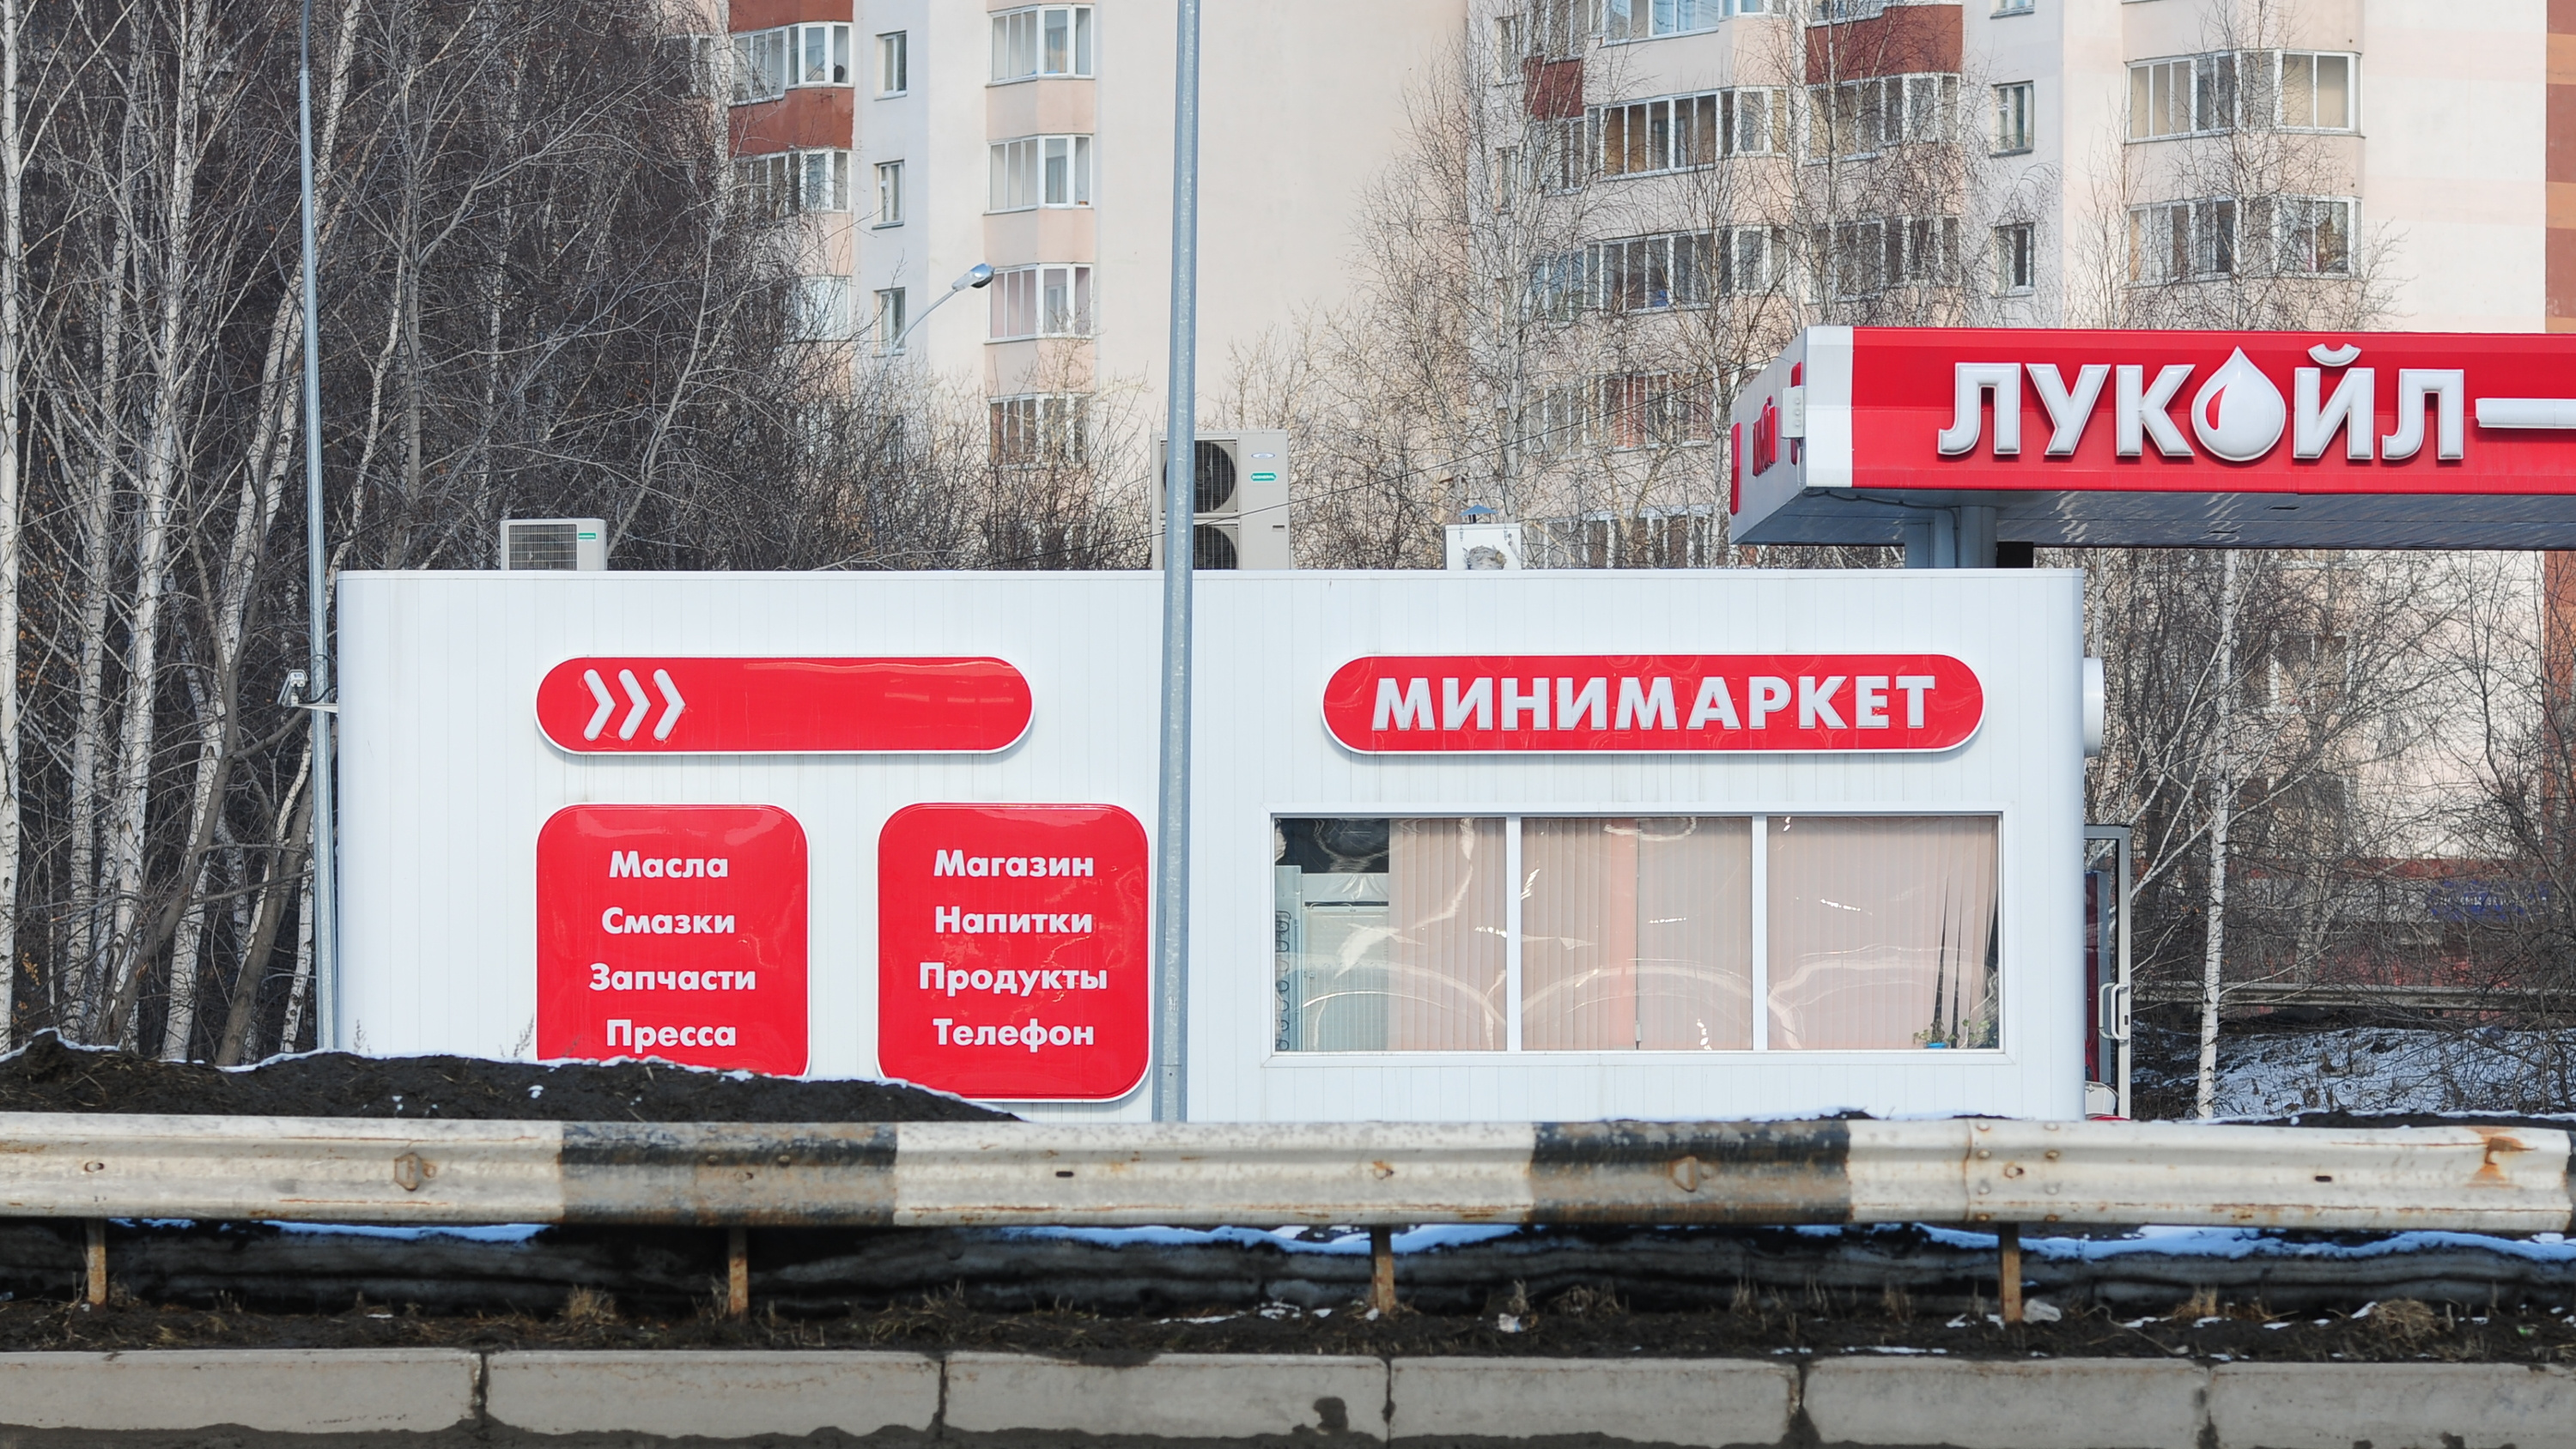 ЛУКОЙЛ судится с автомагазинами в Самарской области. Они работают под вывеской известного бренда